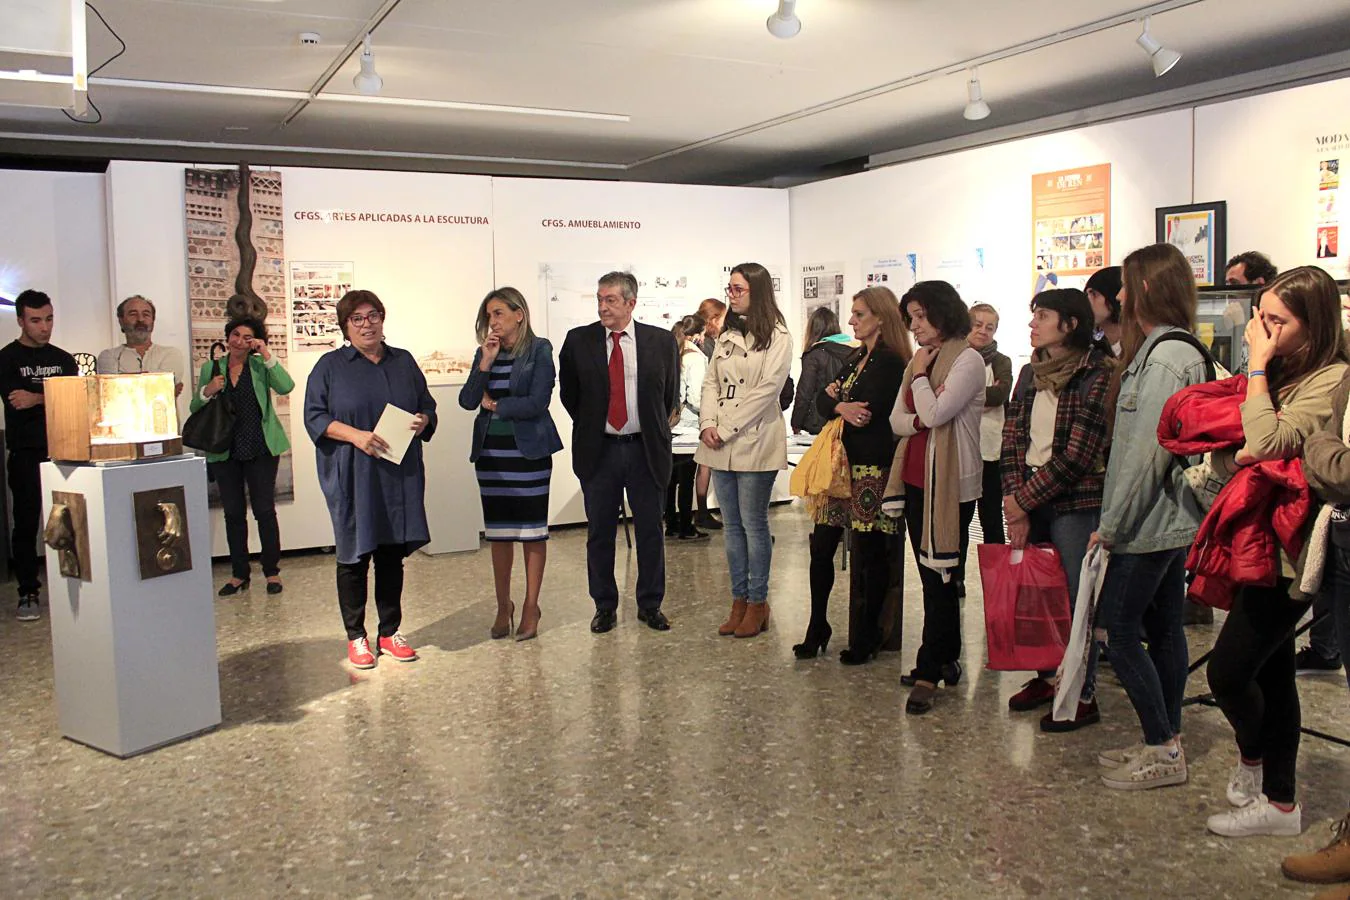 La alcaldesa de Toledo, Milagros Tolón, ha inaugurado este jueves la muestra en la que se exponen los proyectos finales de los alumnos que han cursado en la Escuela de Arte ciclos formativos de grado medio y superior en artes plásticas y diseño. 